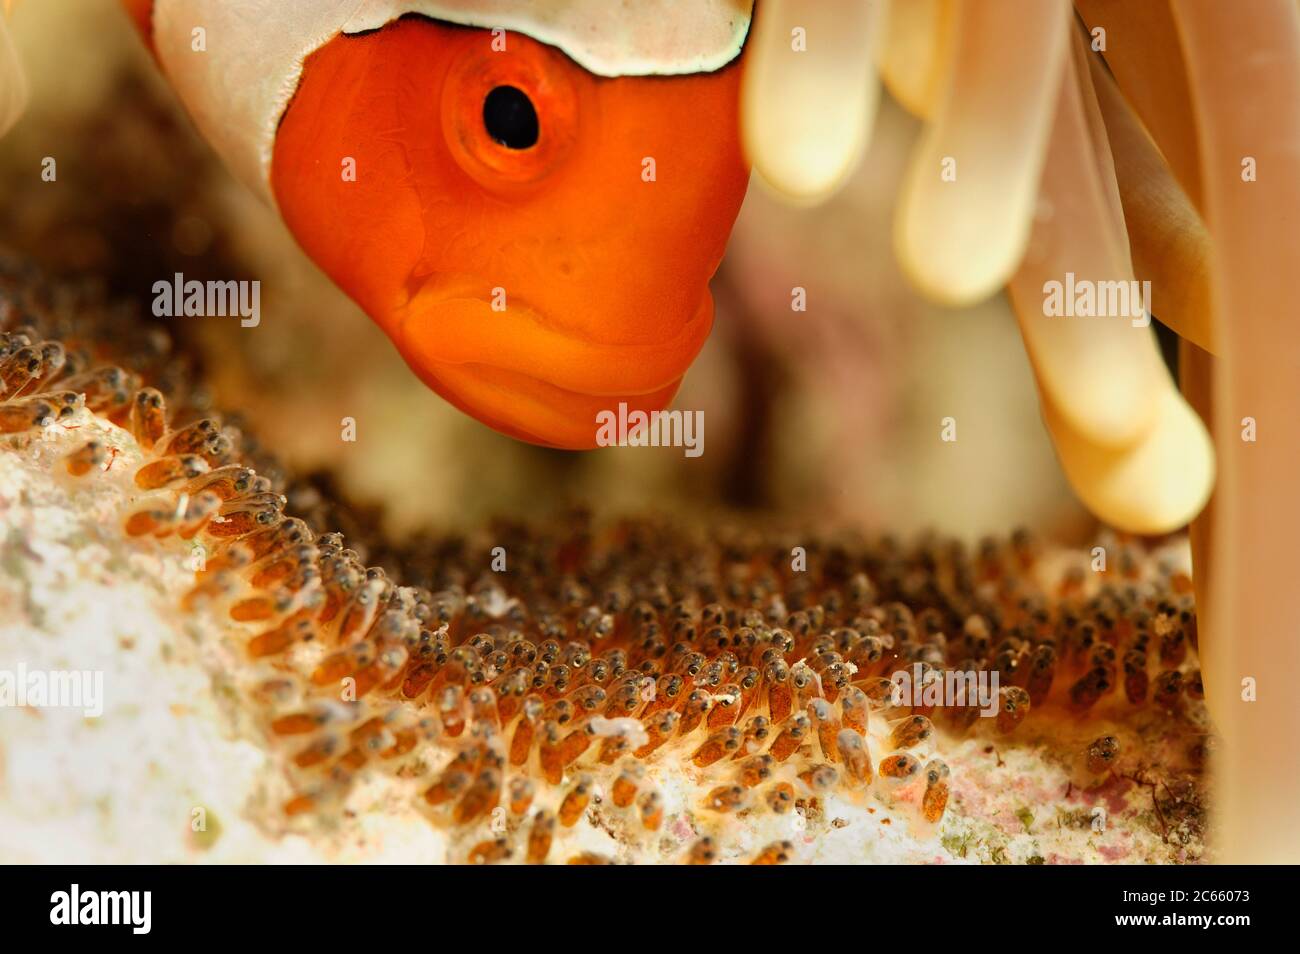 Falso Clown anemonefish (Amphiprion ocellaris) atendiendo sus huevos. Raja Ampat del Norte, Papúa Occidental, Indonesia, Océano Pacífico [tamaño de un solo organismo: 8 cm]| Falsche Clownfisch (Amphiprion ocellaris), der auch Orangeringel- Anemonenfisch genannt wird. Raja Ampat, Papúa Occidental, Indonesien, Pazifischer Ozean Foto de stock